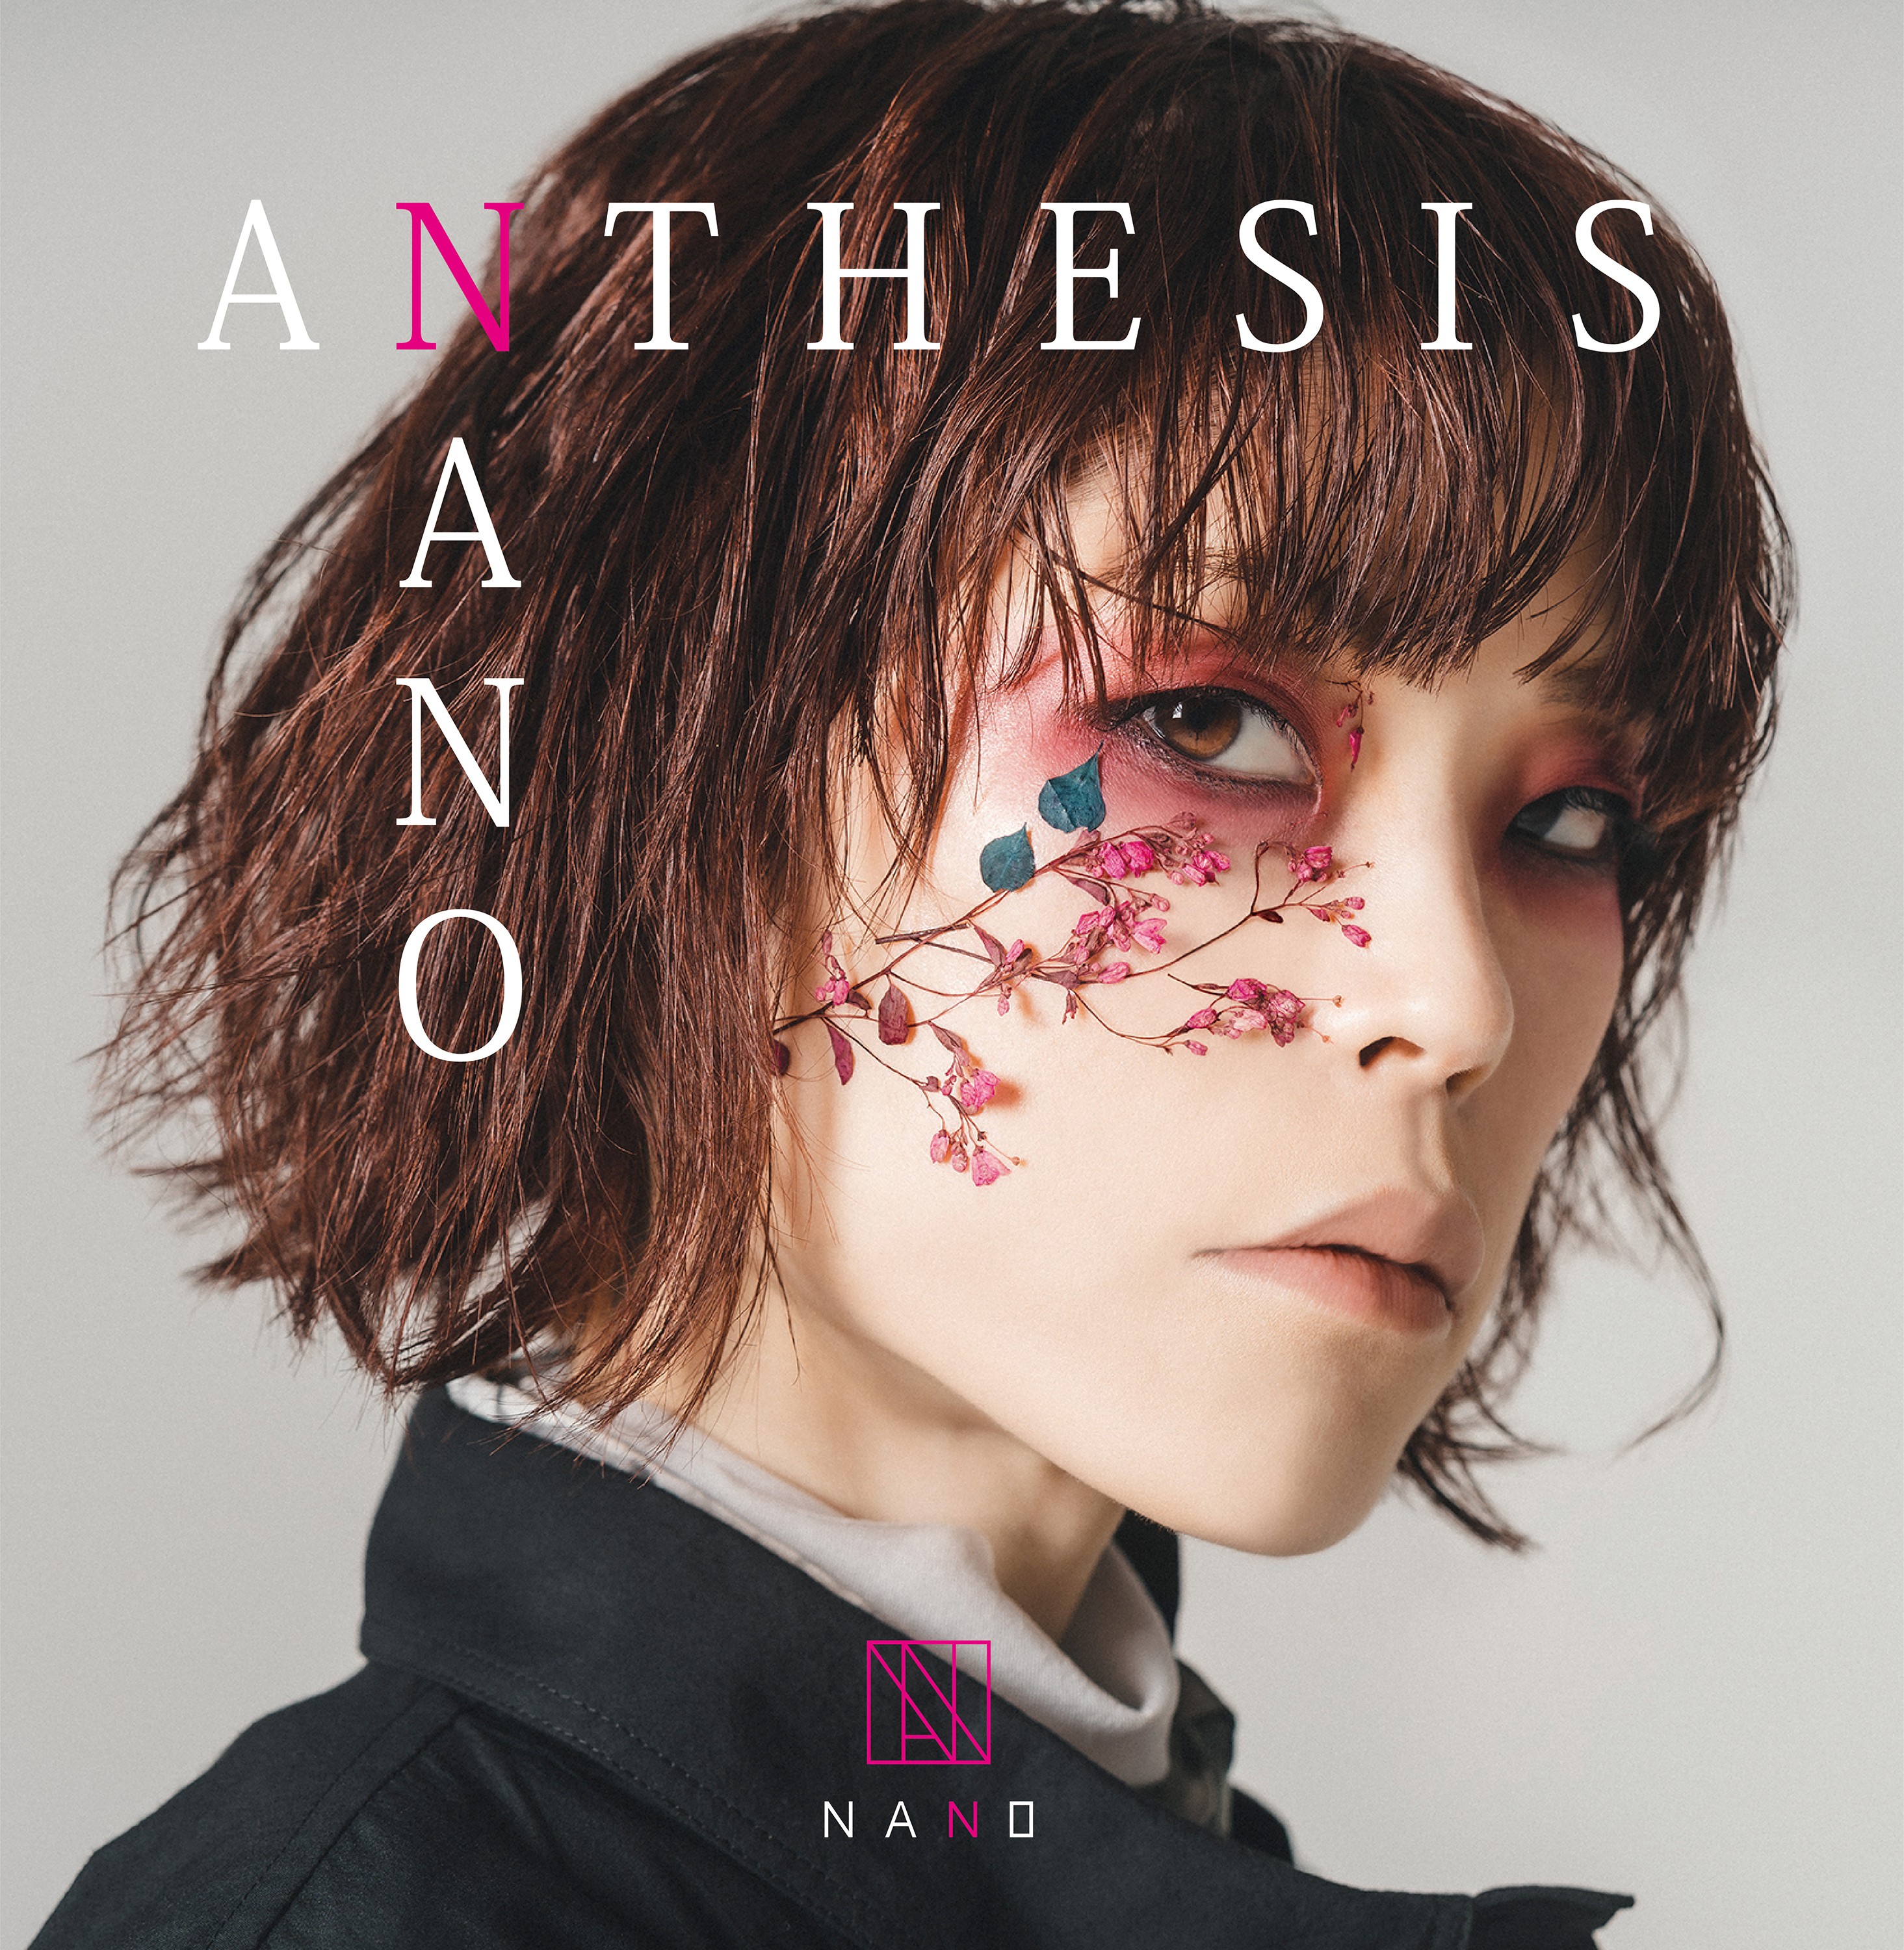 nano (ナノ) – ANTHESIS [FLAC / WEB] [2021.04.14]